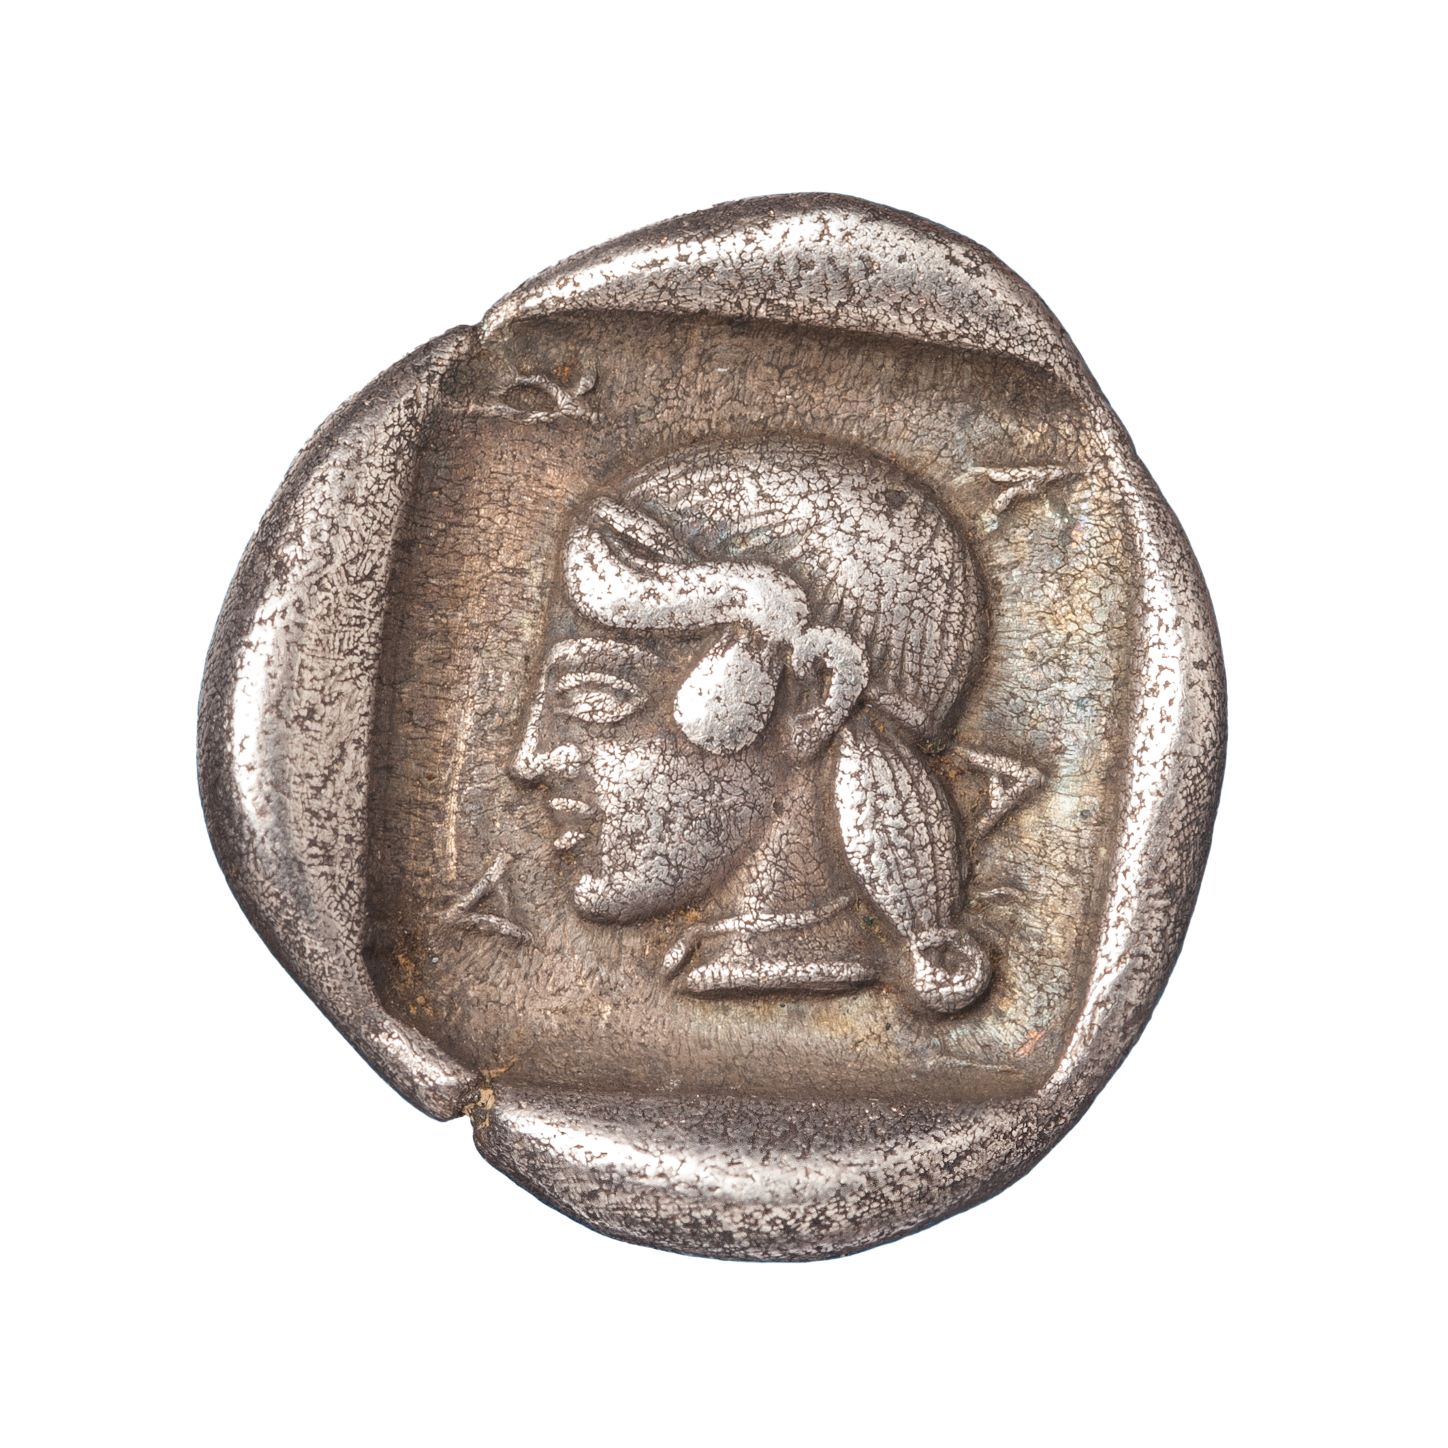 Αργυρό τριώβολο, αρκαδική κοπή (5ος πΧ. αιώνας) Μουσείο Μπενάκη